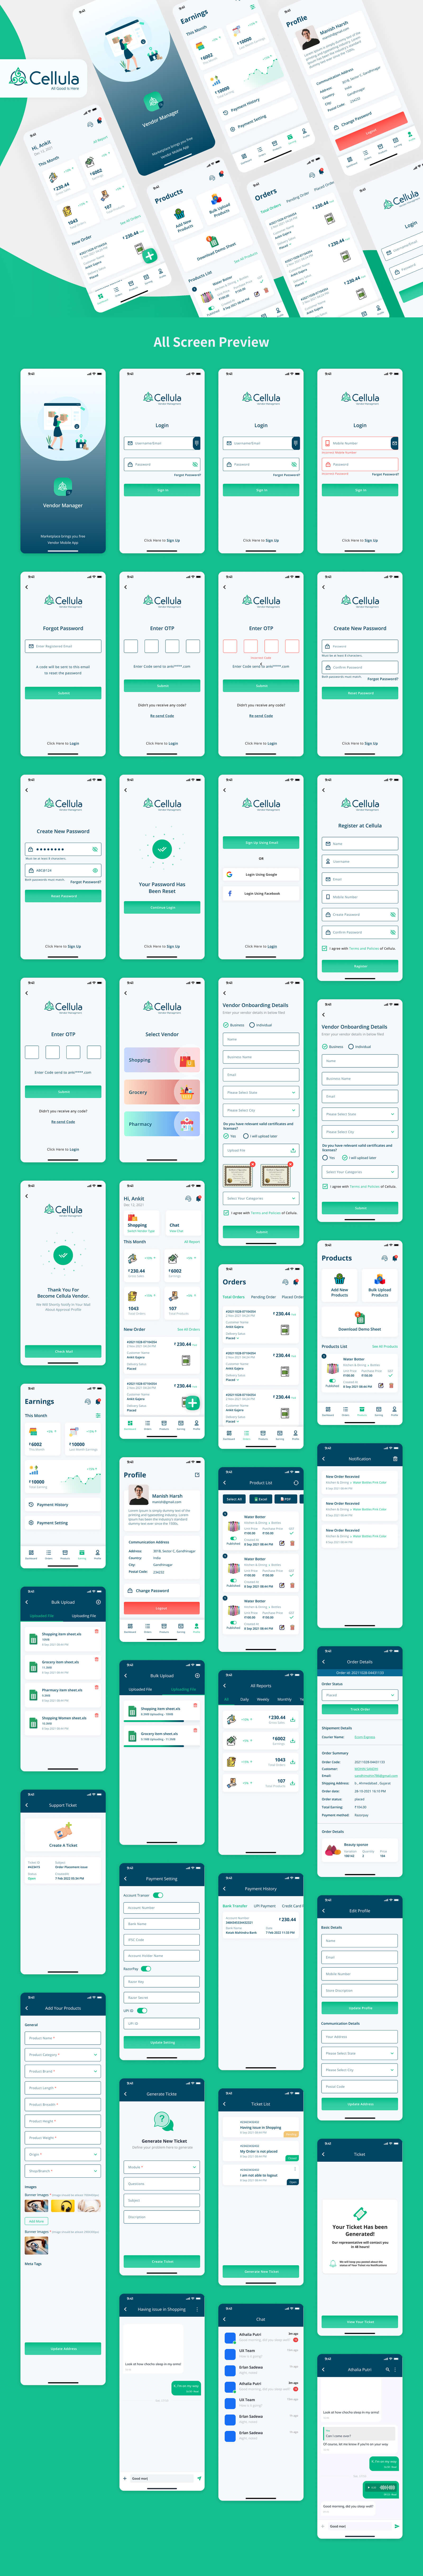 绿色系社区电商百货电商App UI界面设计 .fig素材